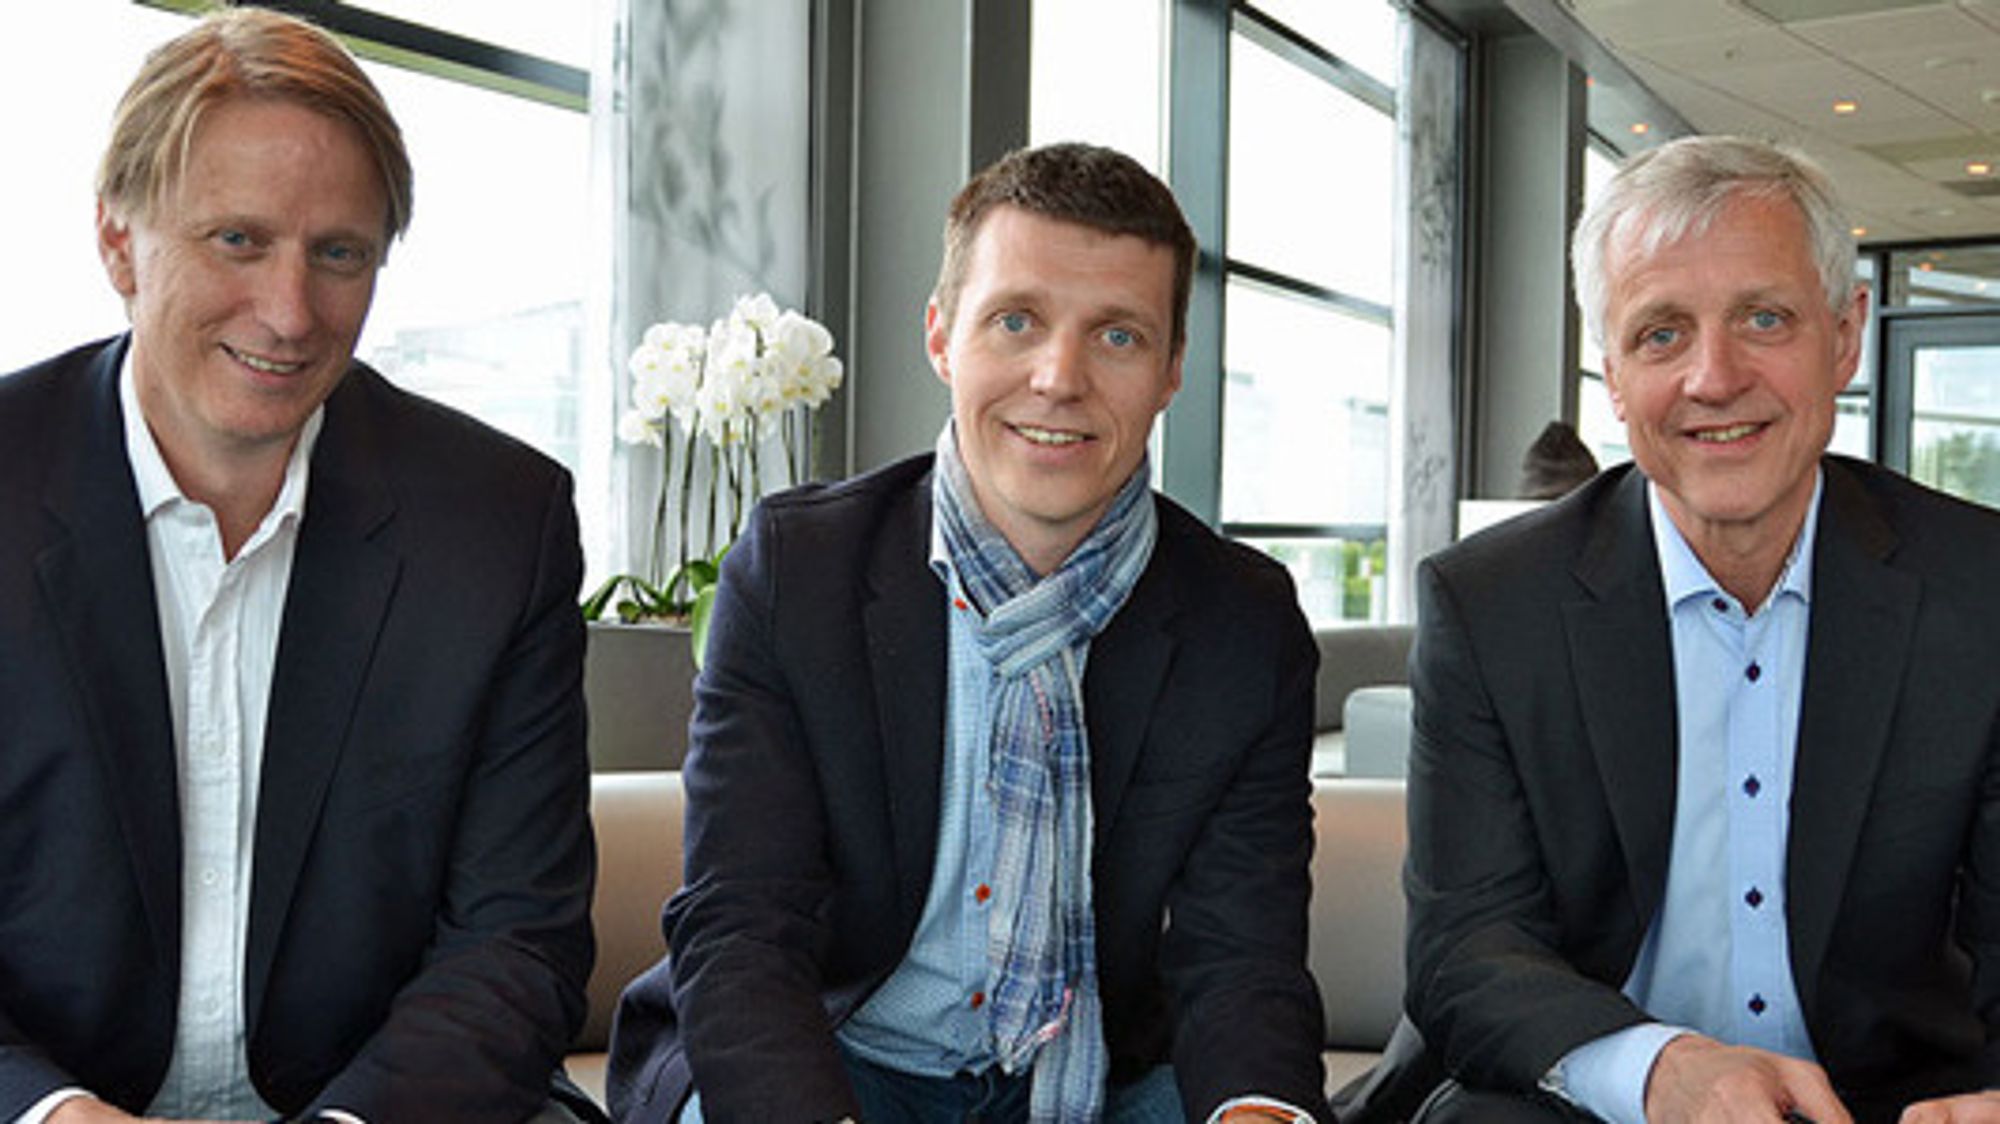 Avtalen mellom VG og Canal digital ble signert av Gisle Pedersen, Jo Christian Oterhals og Petter Carlsen.